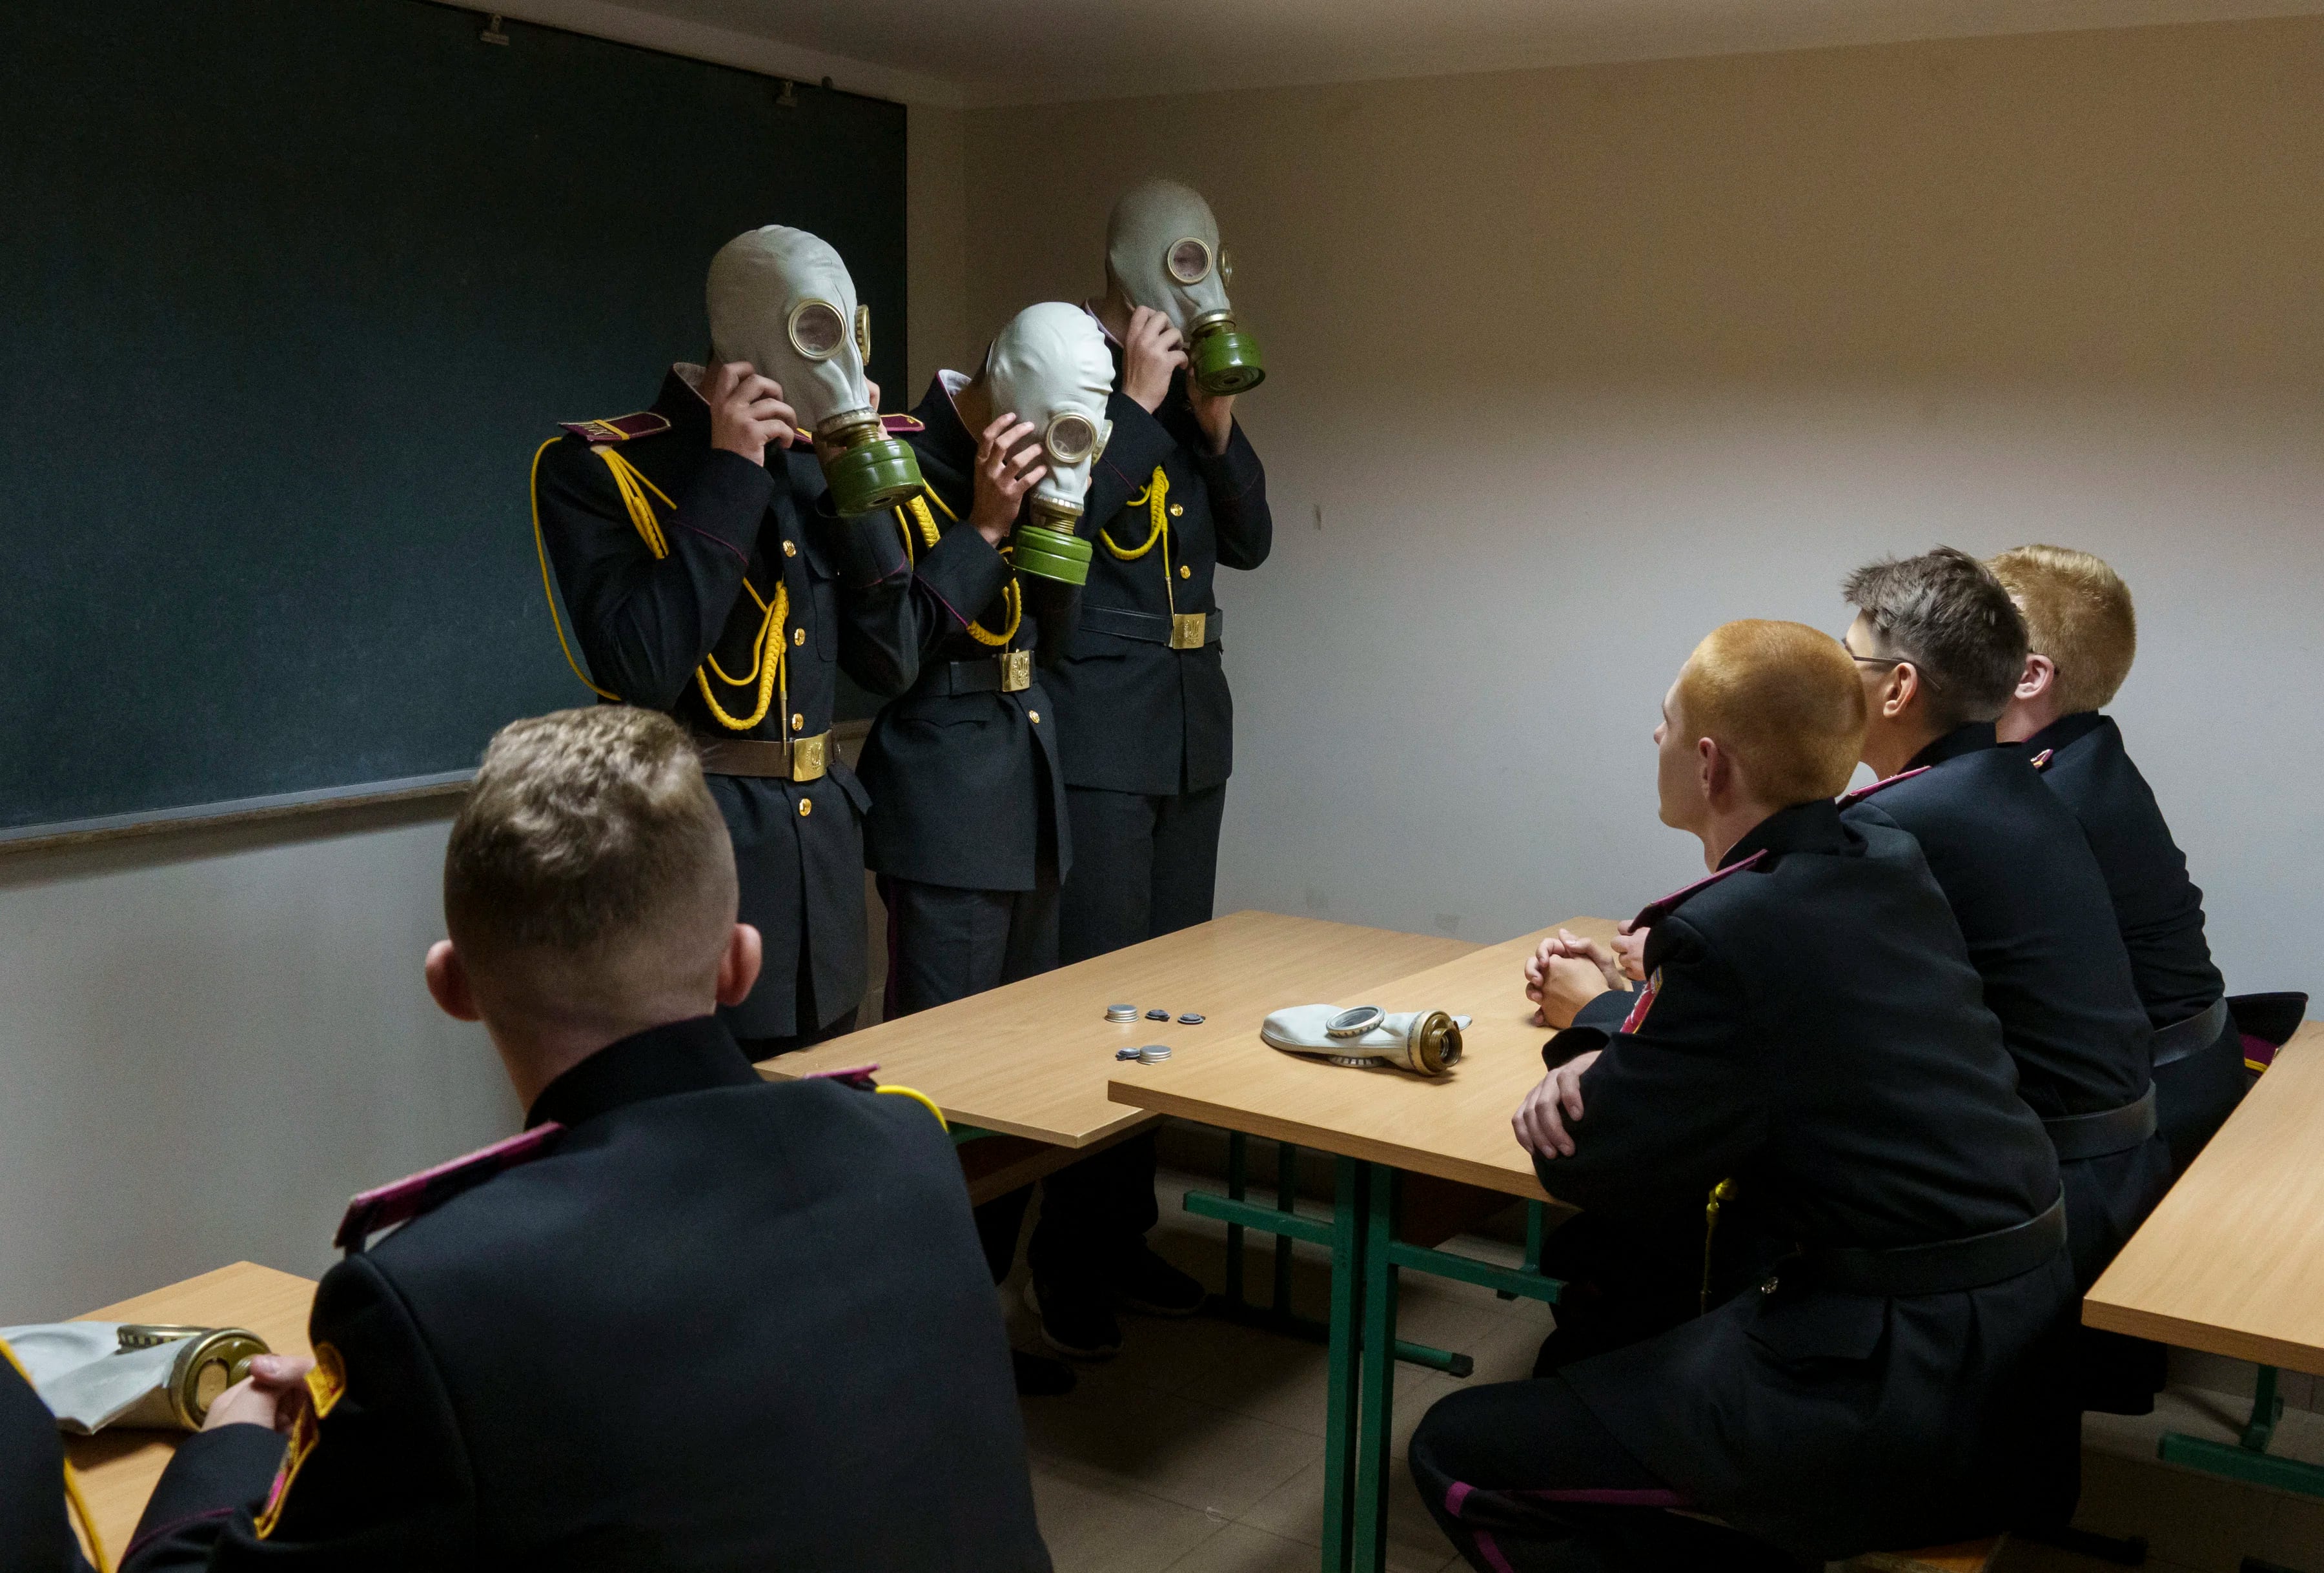 Los cadetes practican con máscaras de gas durante una lección en un refugio antiaéreo el primer día de clases en un liceo de cadetes en Kiev, Ucrania, el 1 de septiembre de 2022. 